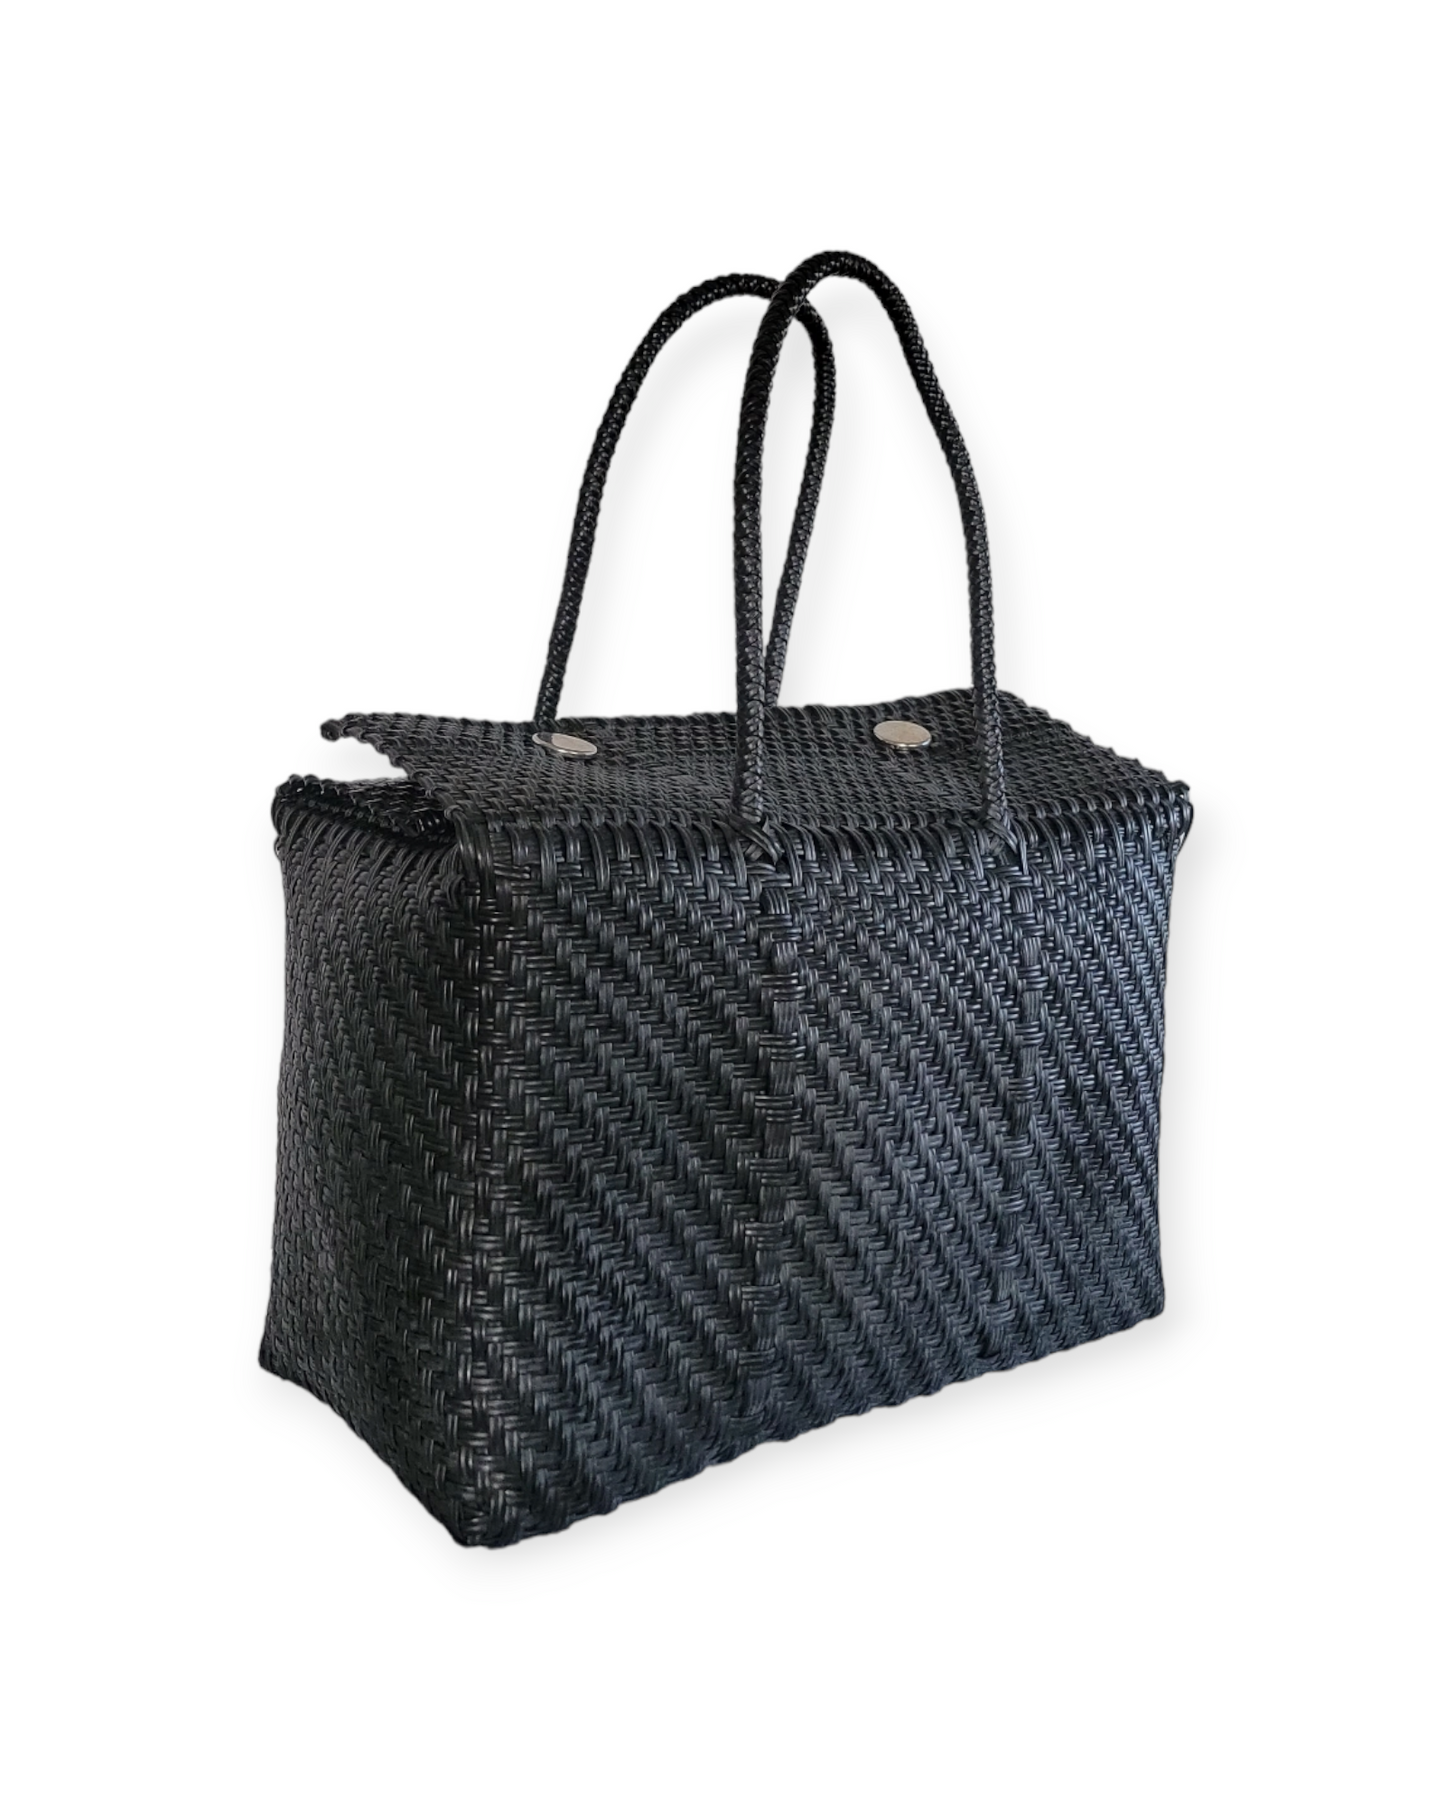 Be Praia | Black XL Basket | Eco-Friendly Handwoven Bag